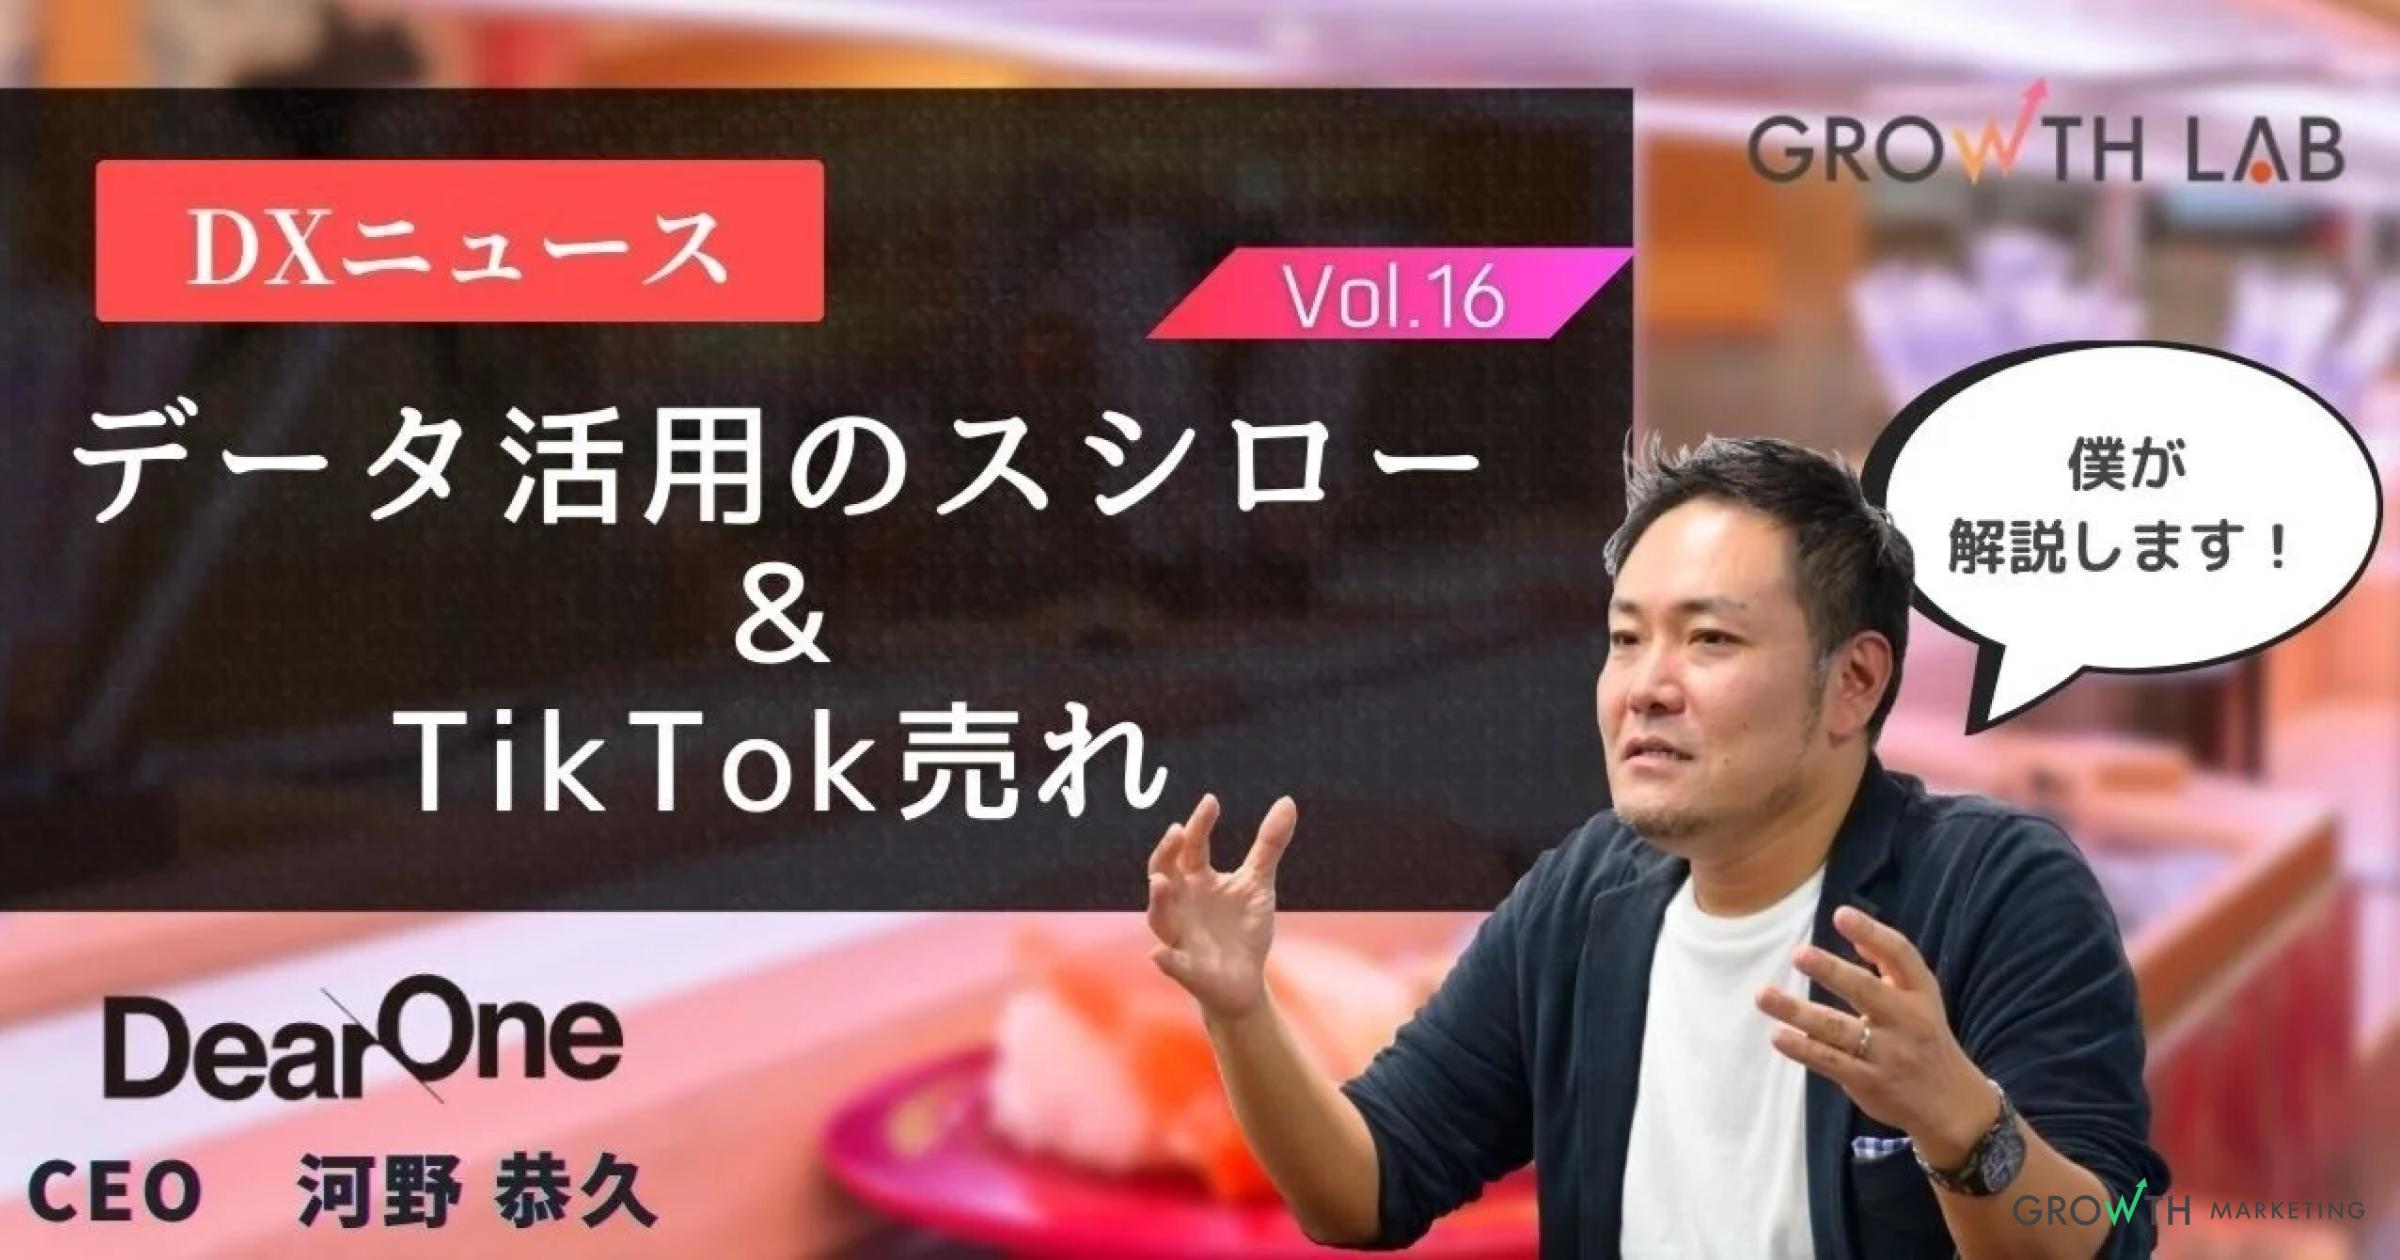 データを活用するスシローと話題の「TikTok売れ」について【DXニュース】vol.16